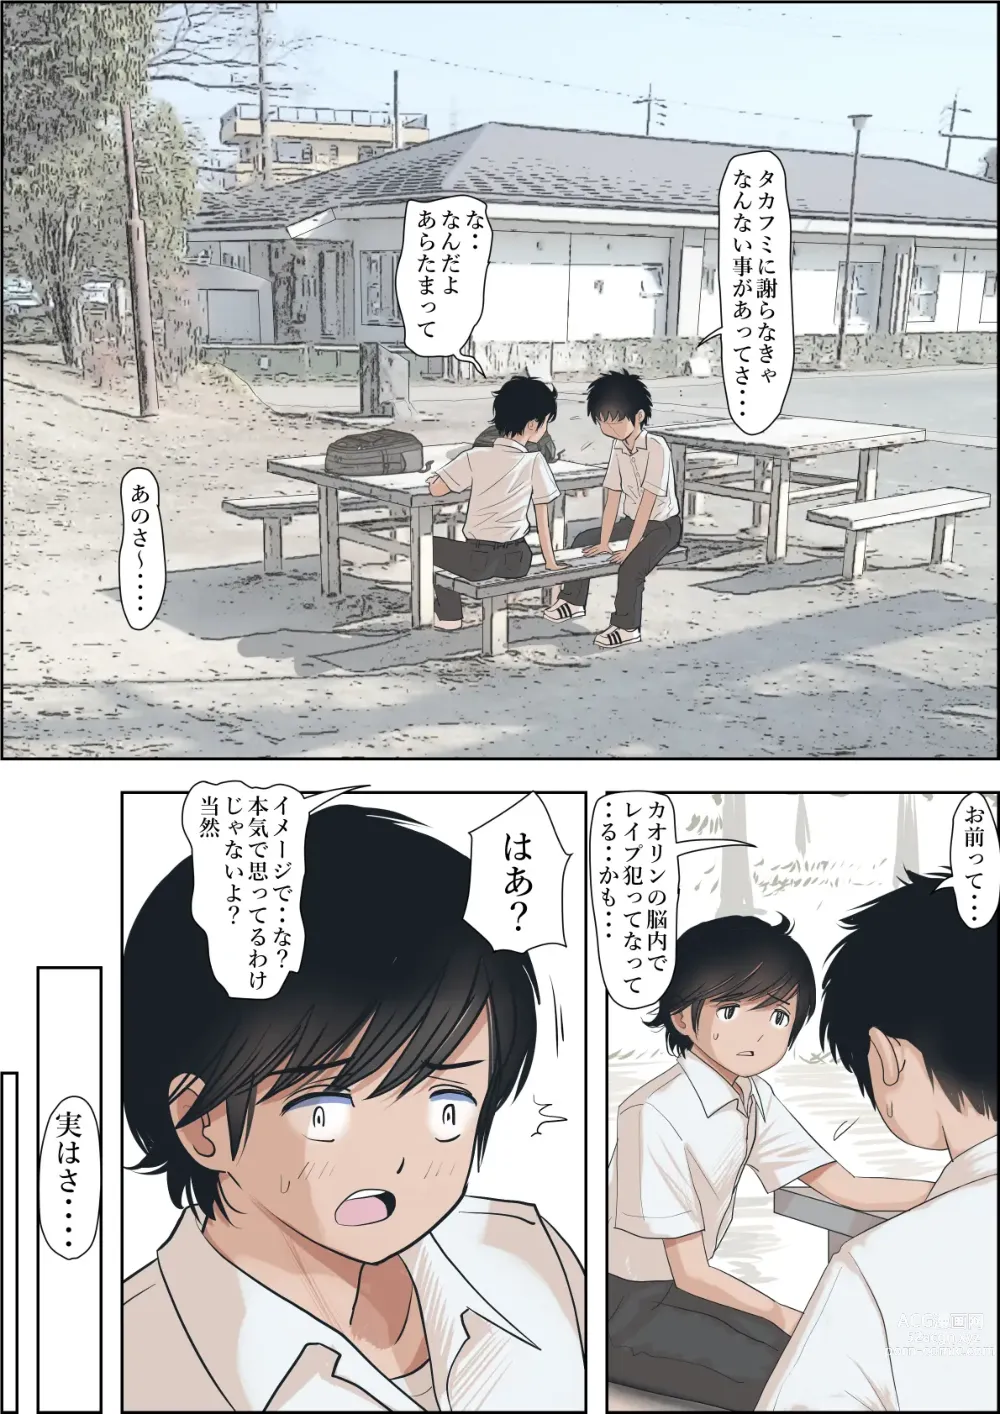 Page 75 of doujinshi Kaneda wa nani mo Warukunai Vol.1